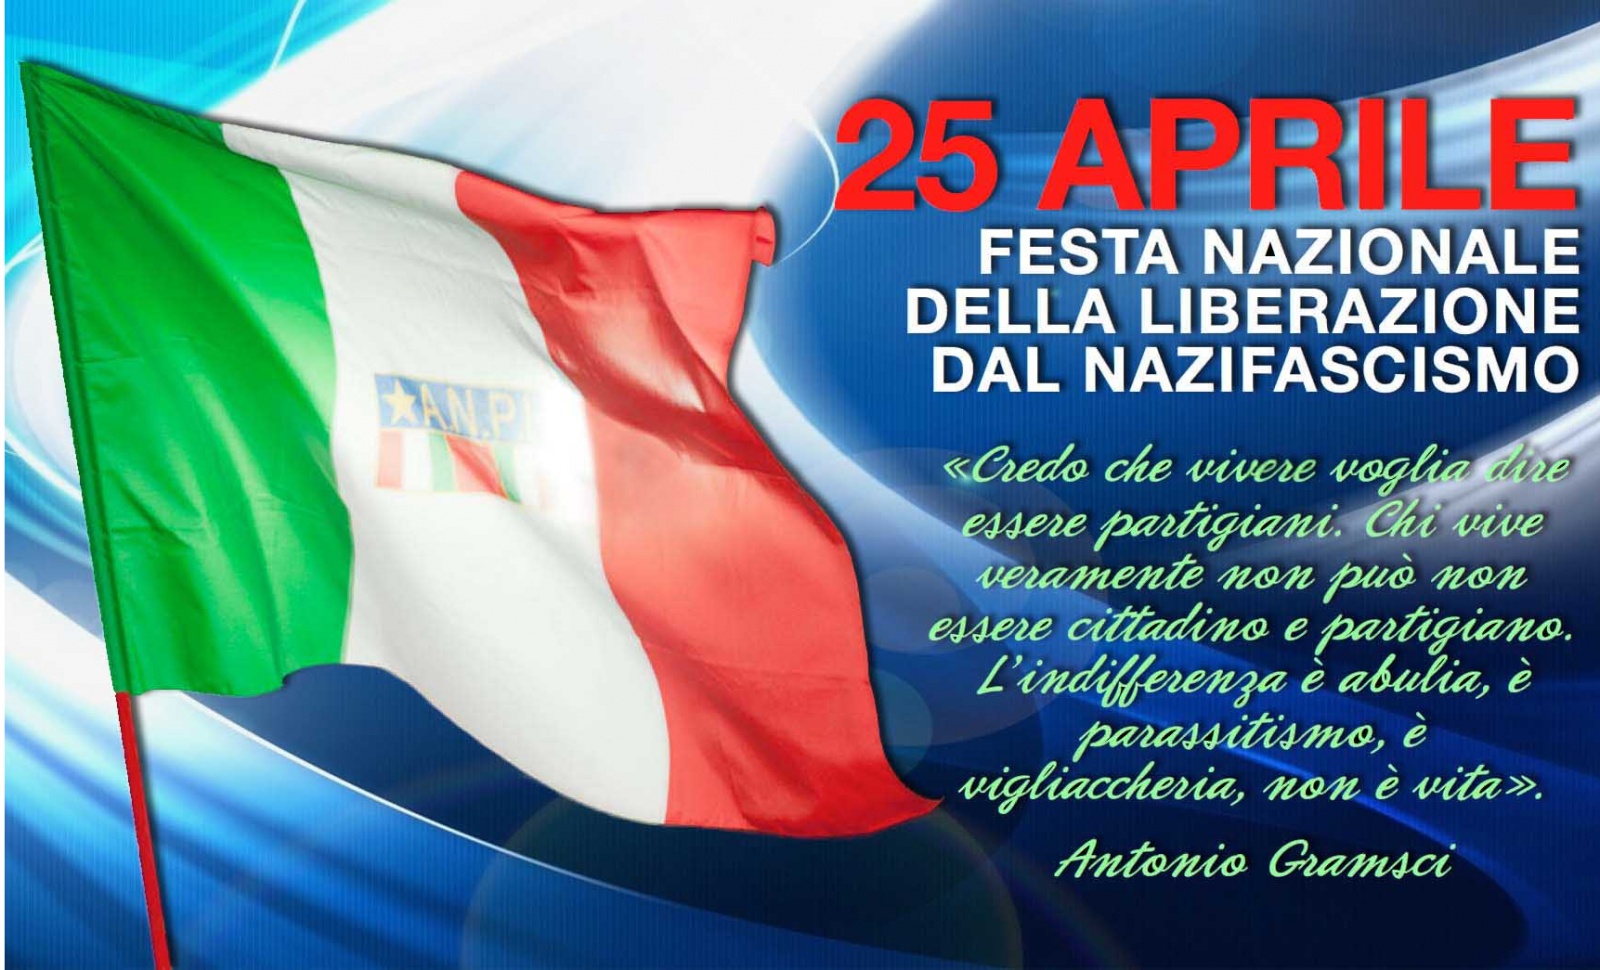 25 апреля 2023 праздник. 25 Aprile. 25 Апреля праздник в Италии. Открытка к festa della Liberazione. День независимости в Италии 25 апреля.